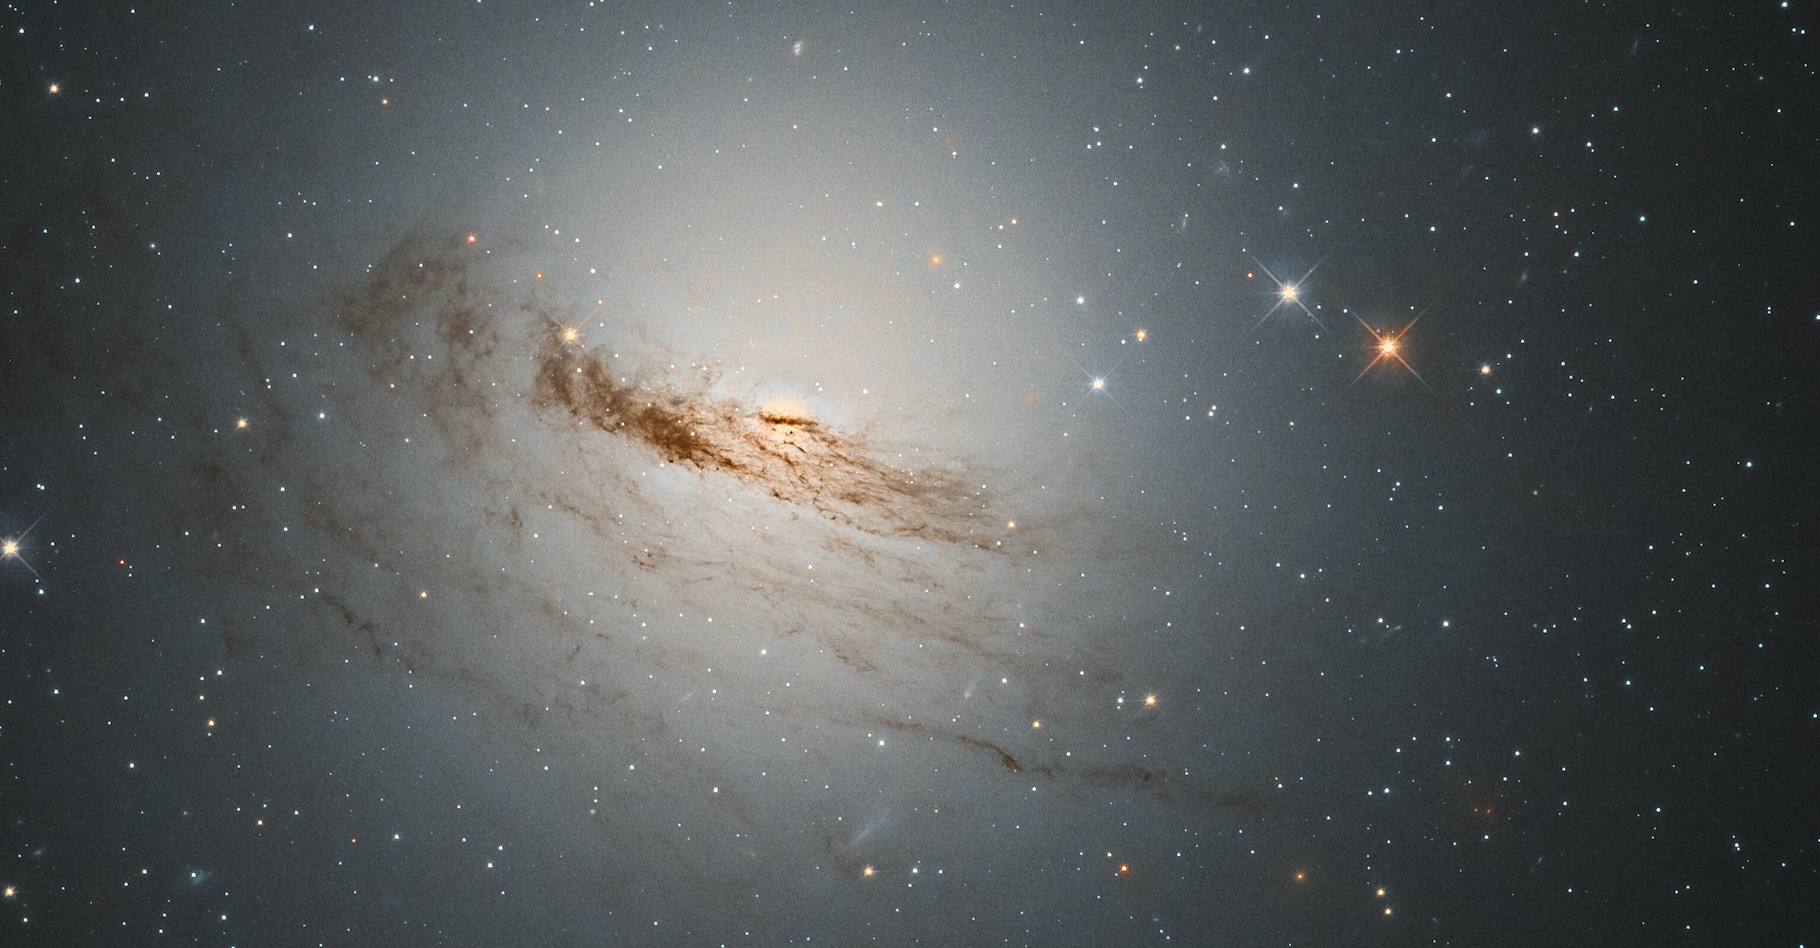 Les restes de la galaxie lenticulaire NGC 1947 révélés par le télescope spatial Hubble © D. Rosario, ESA, Hubble &amp; NASA